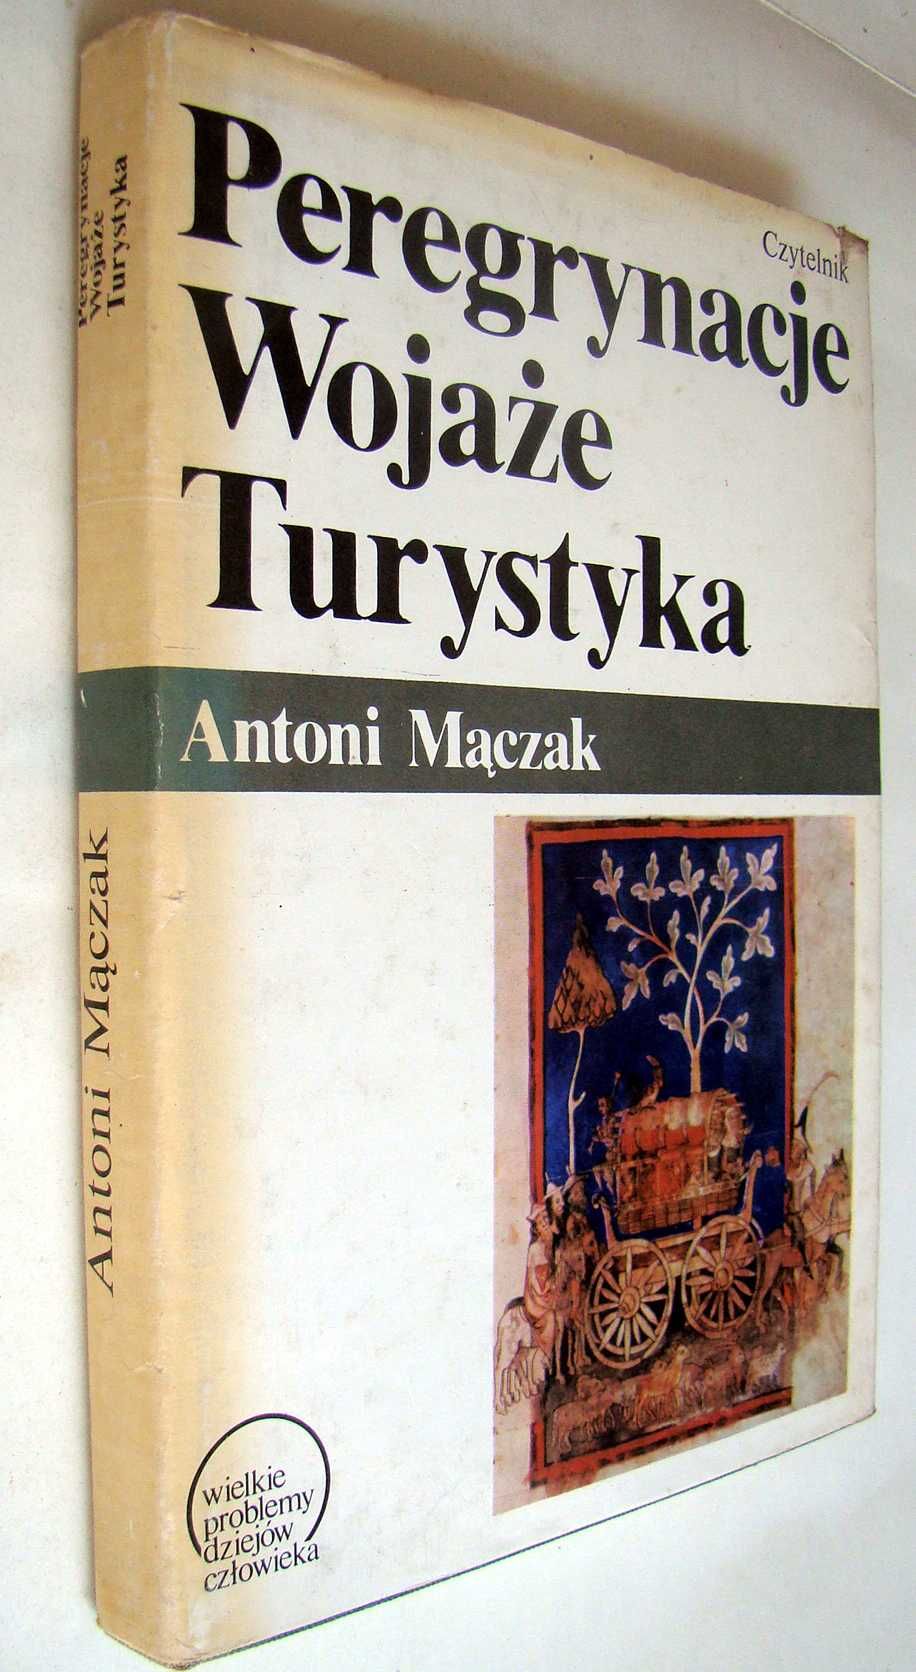 Peregrynacje - Wojaże - Turystyka. Antoni Maczak